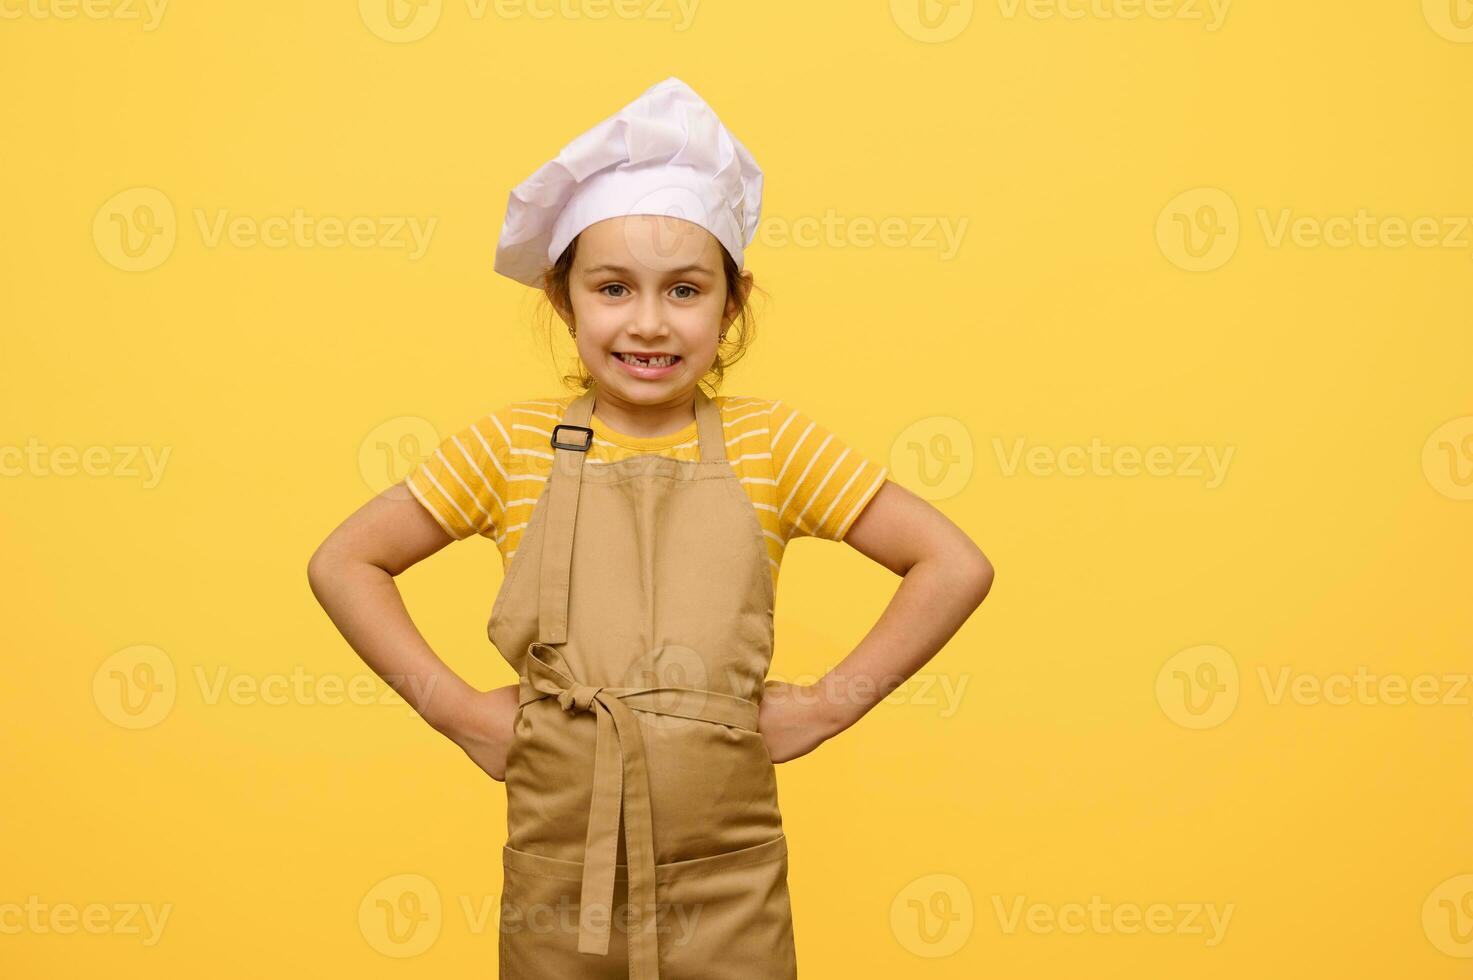 busig barn flicka klädd som konditor i förkläde och vit kockens keps, sätta händer på midja, ser på kamera foto